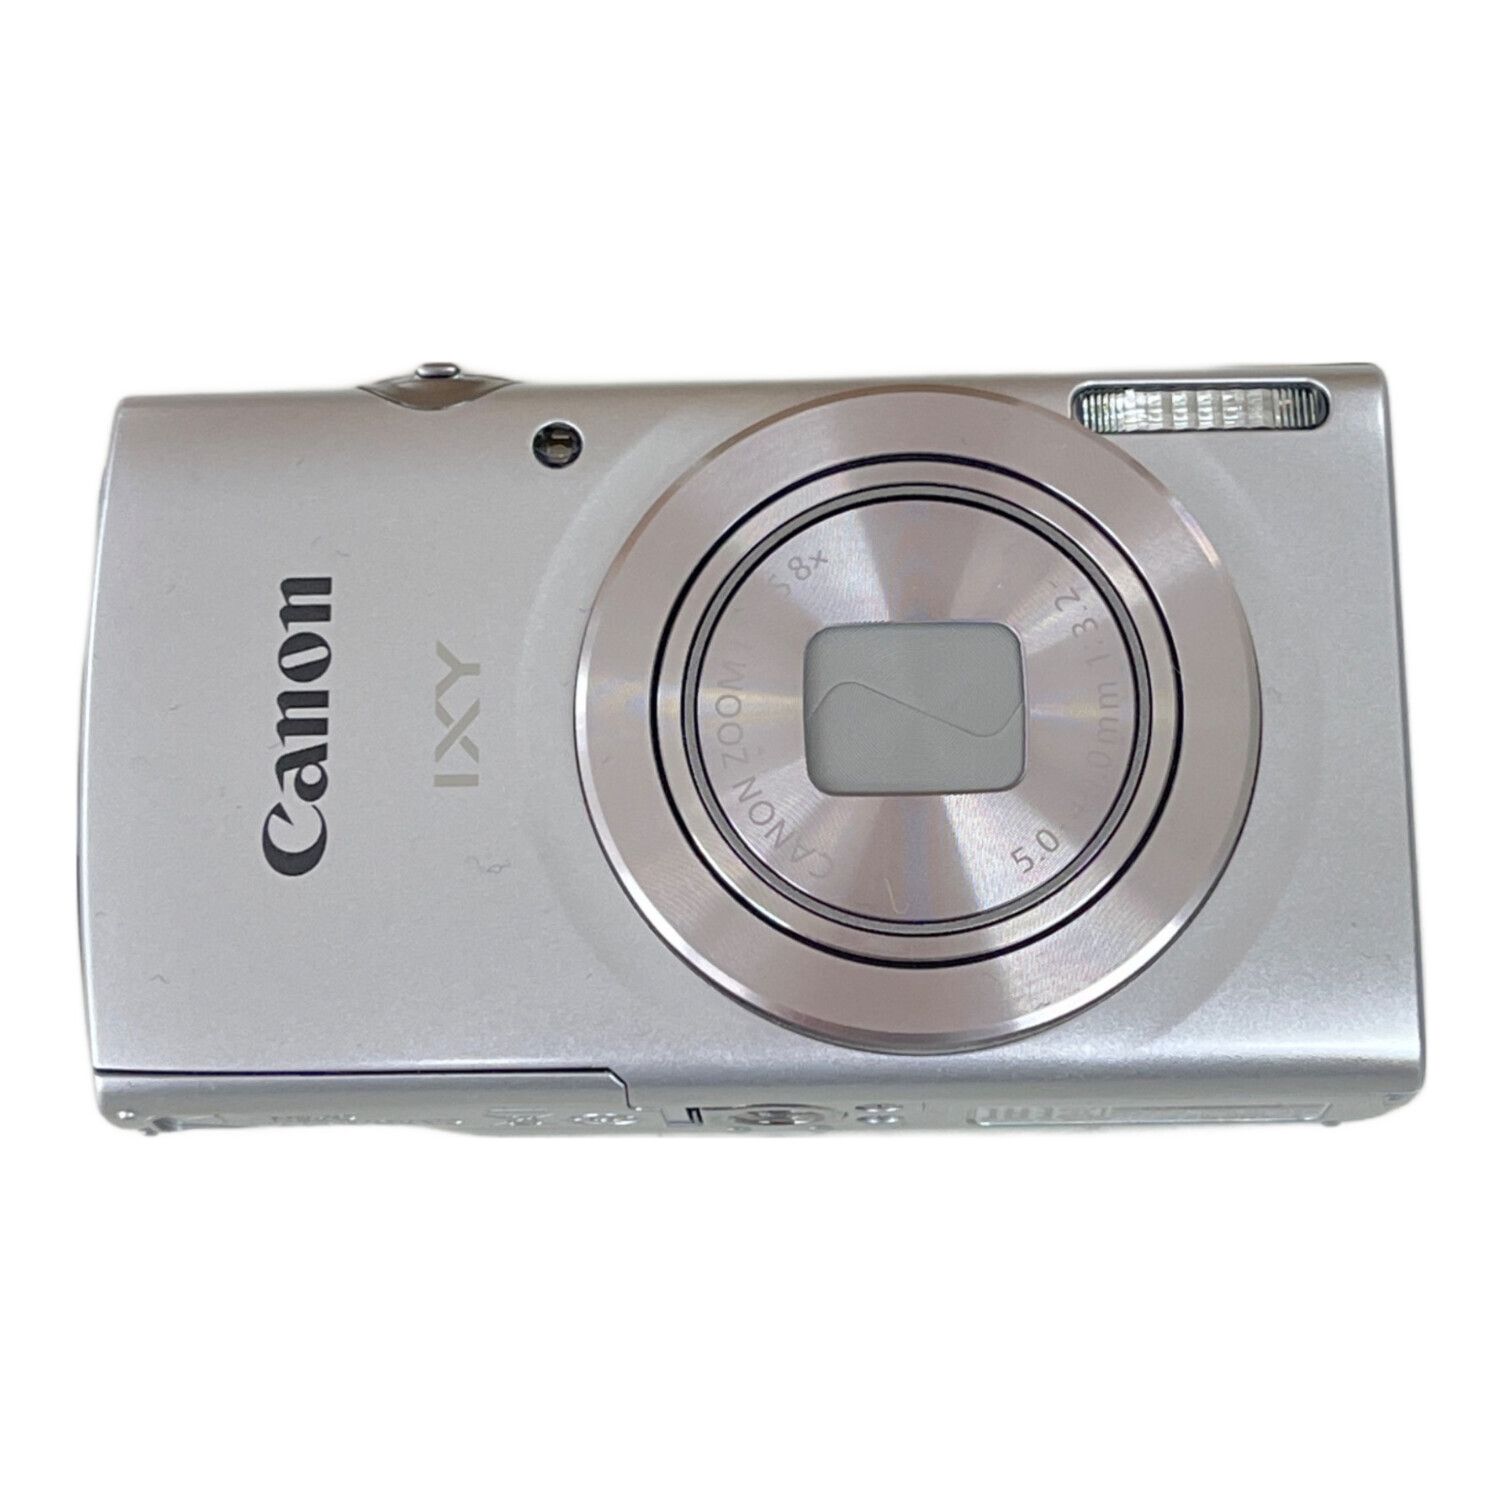 CANON (キャノン) コンパクトデジタルカメラ IXY200 1270万画素 専用電池 SDカード対応  841060005277｜トレファクONLINE